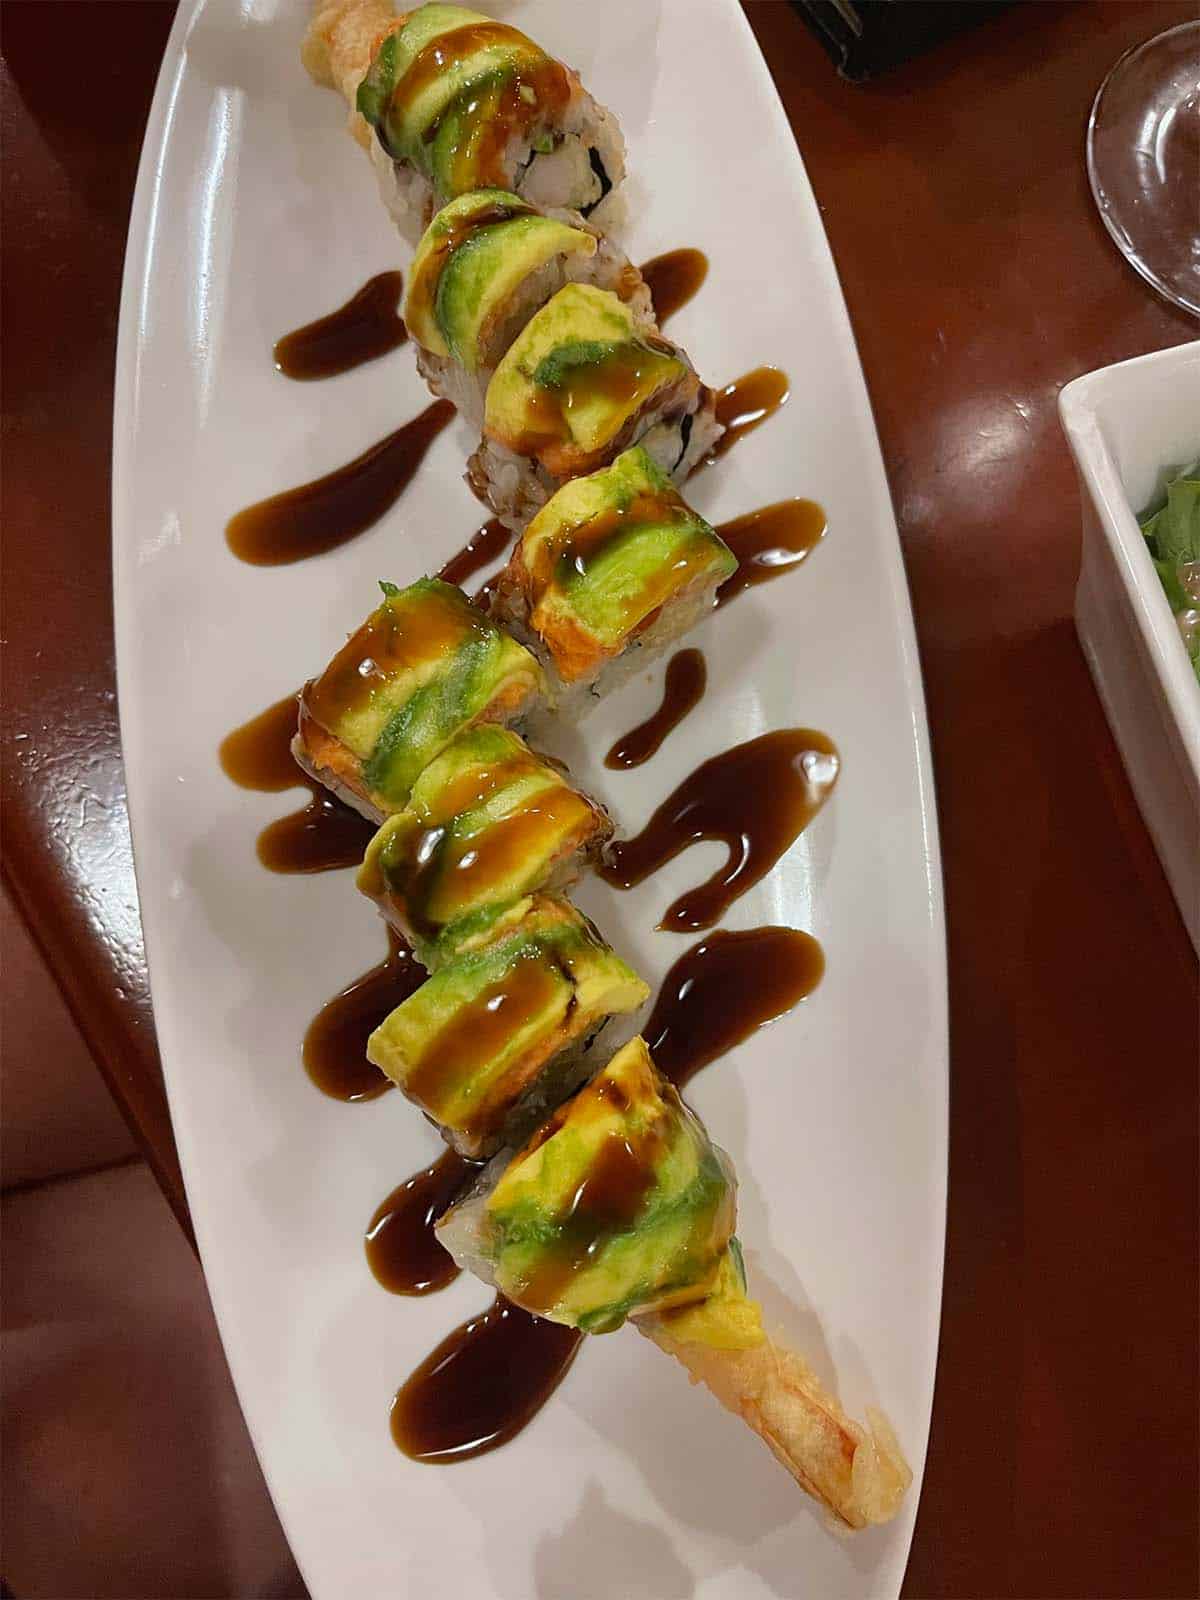 A plate of crispy sushi rolls.